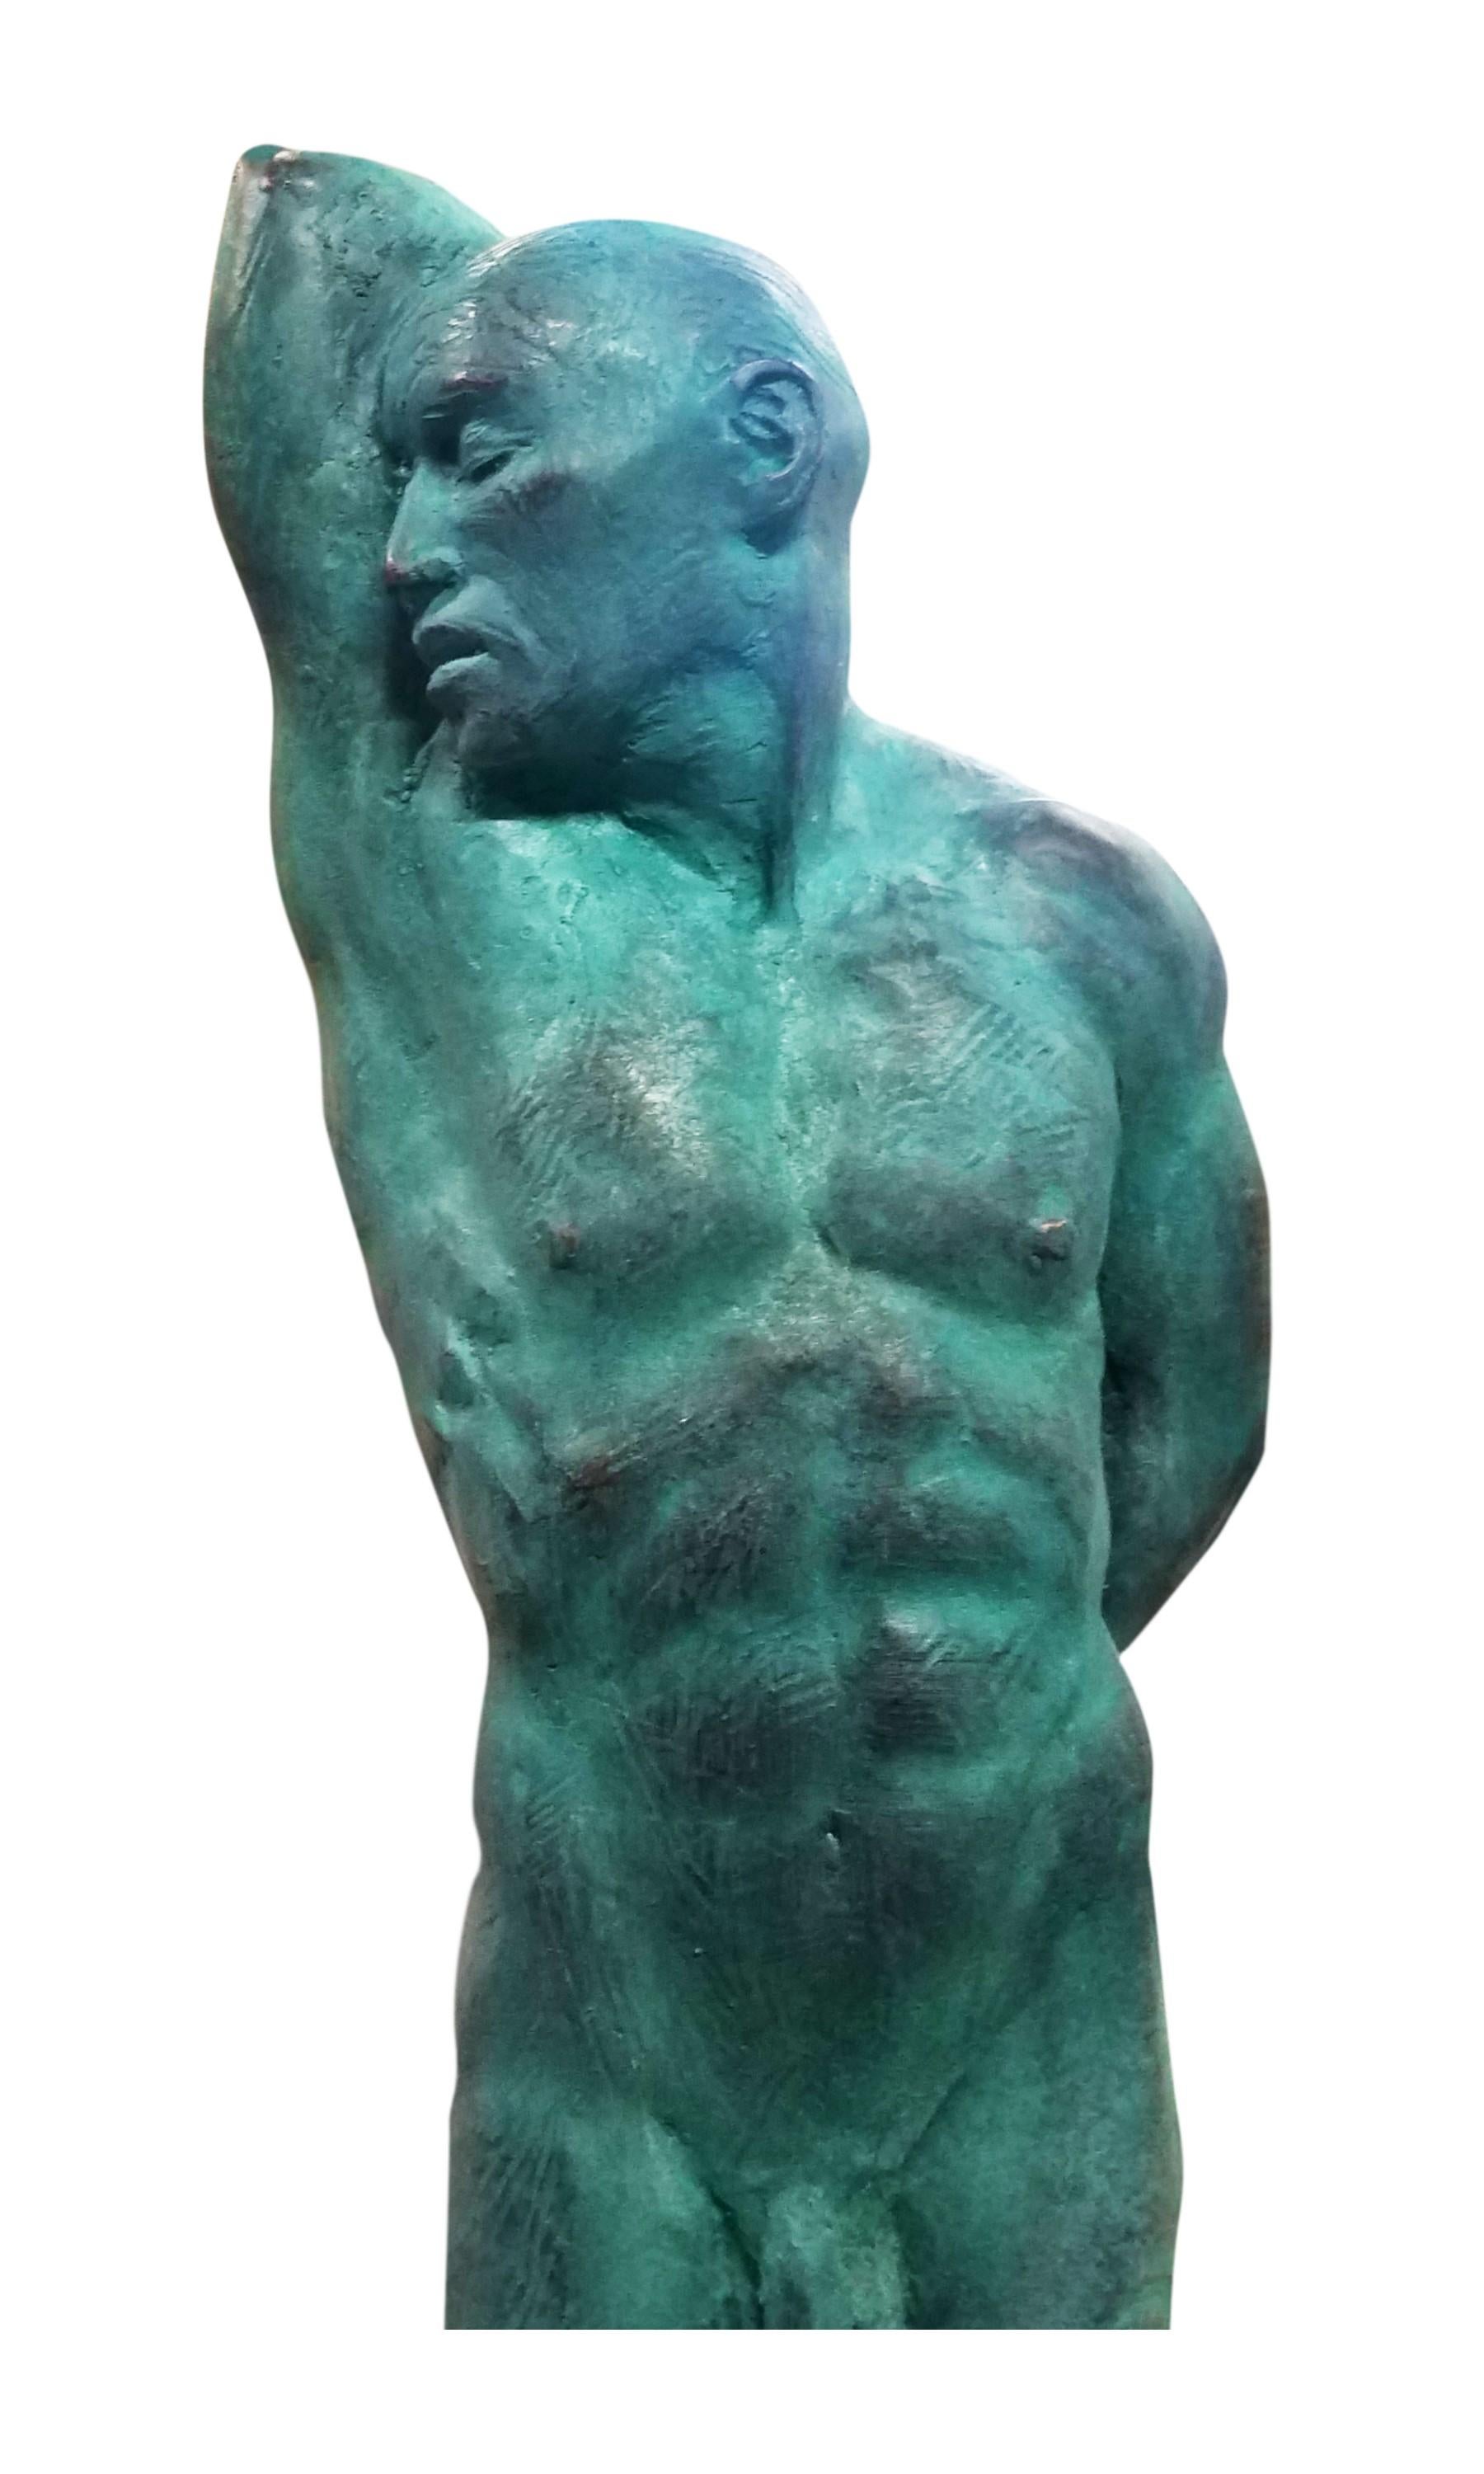 Dies ist eine außergewöhnliche Bronzeskulptur eines klassischen männlichen Aktes des Künstlers Dean Kugler. Die Liebe zum Detail und das vollständige Verständnis der menschlichen Figur sind offensichtlich. Die Figur steht mit dem größten Teil ihres